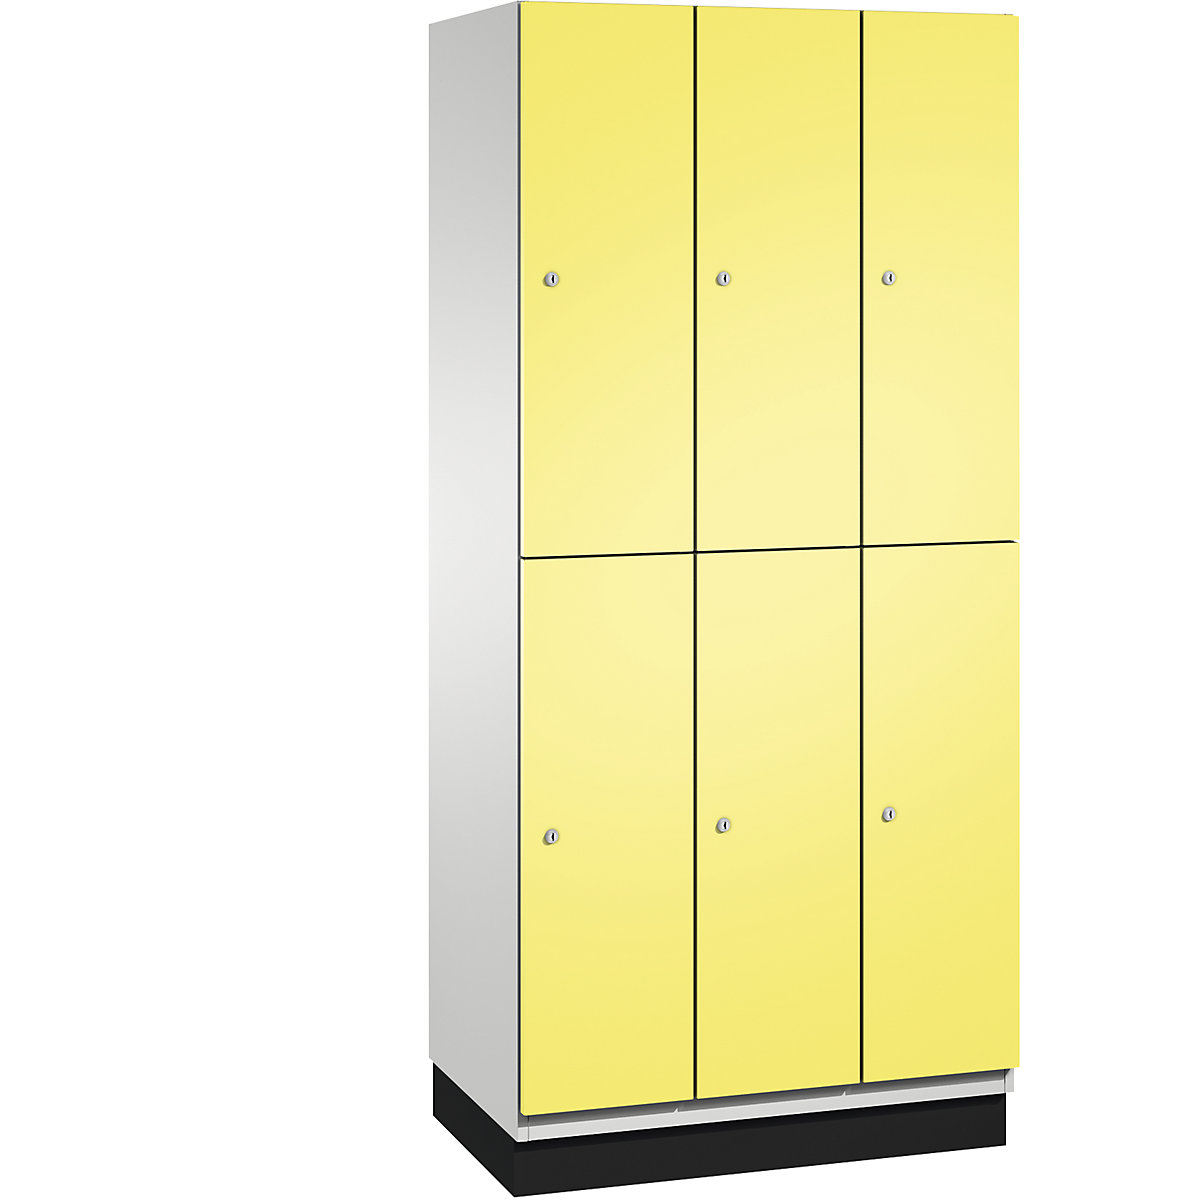 C+P – Skříň s boxy CAMBIO s tyčí na oděvy, 6 boxů, korpus světlý šedý / dveře sírové žluté, šířka 900 mm